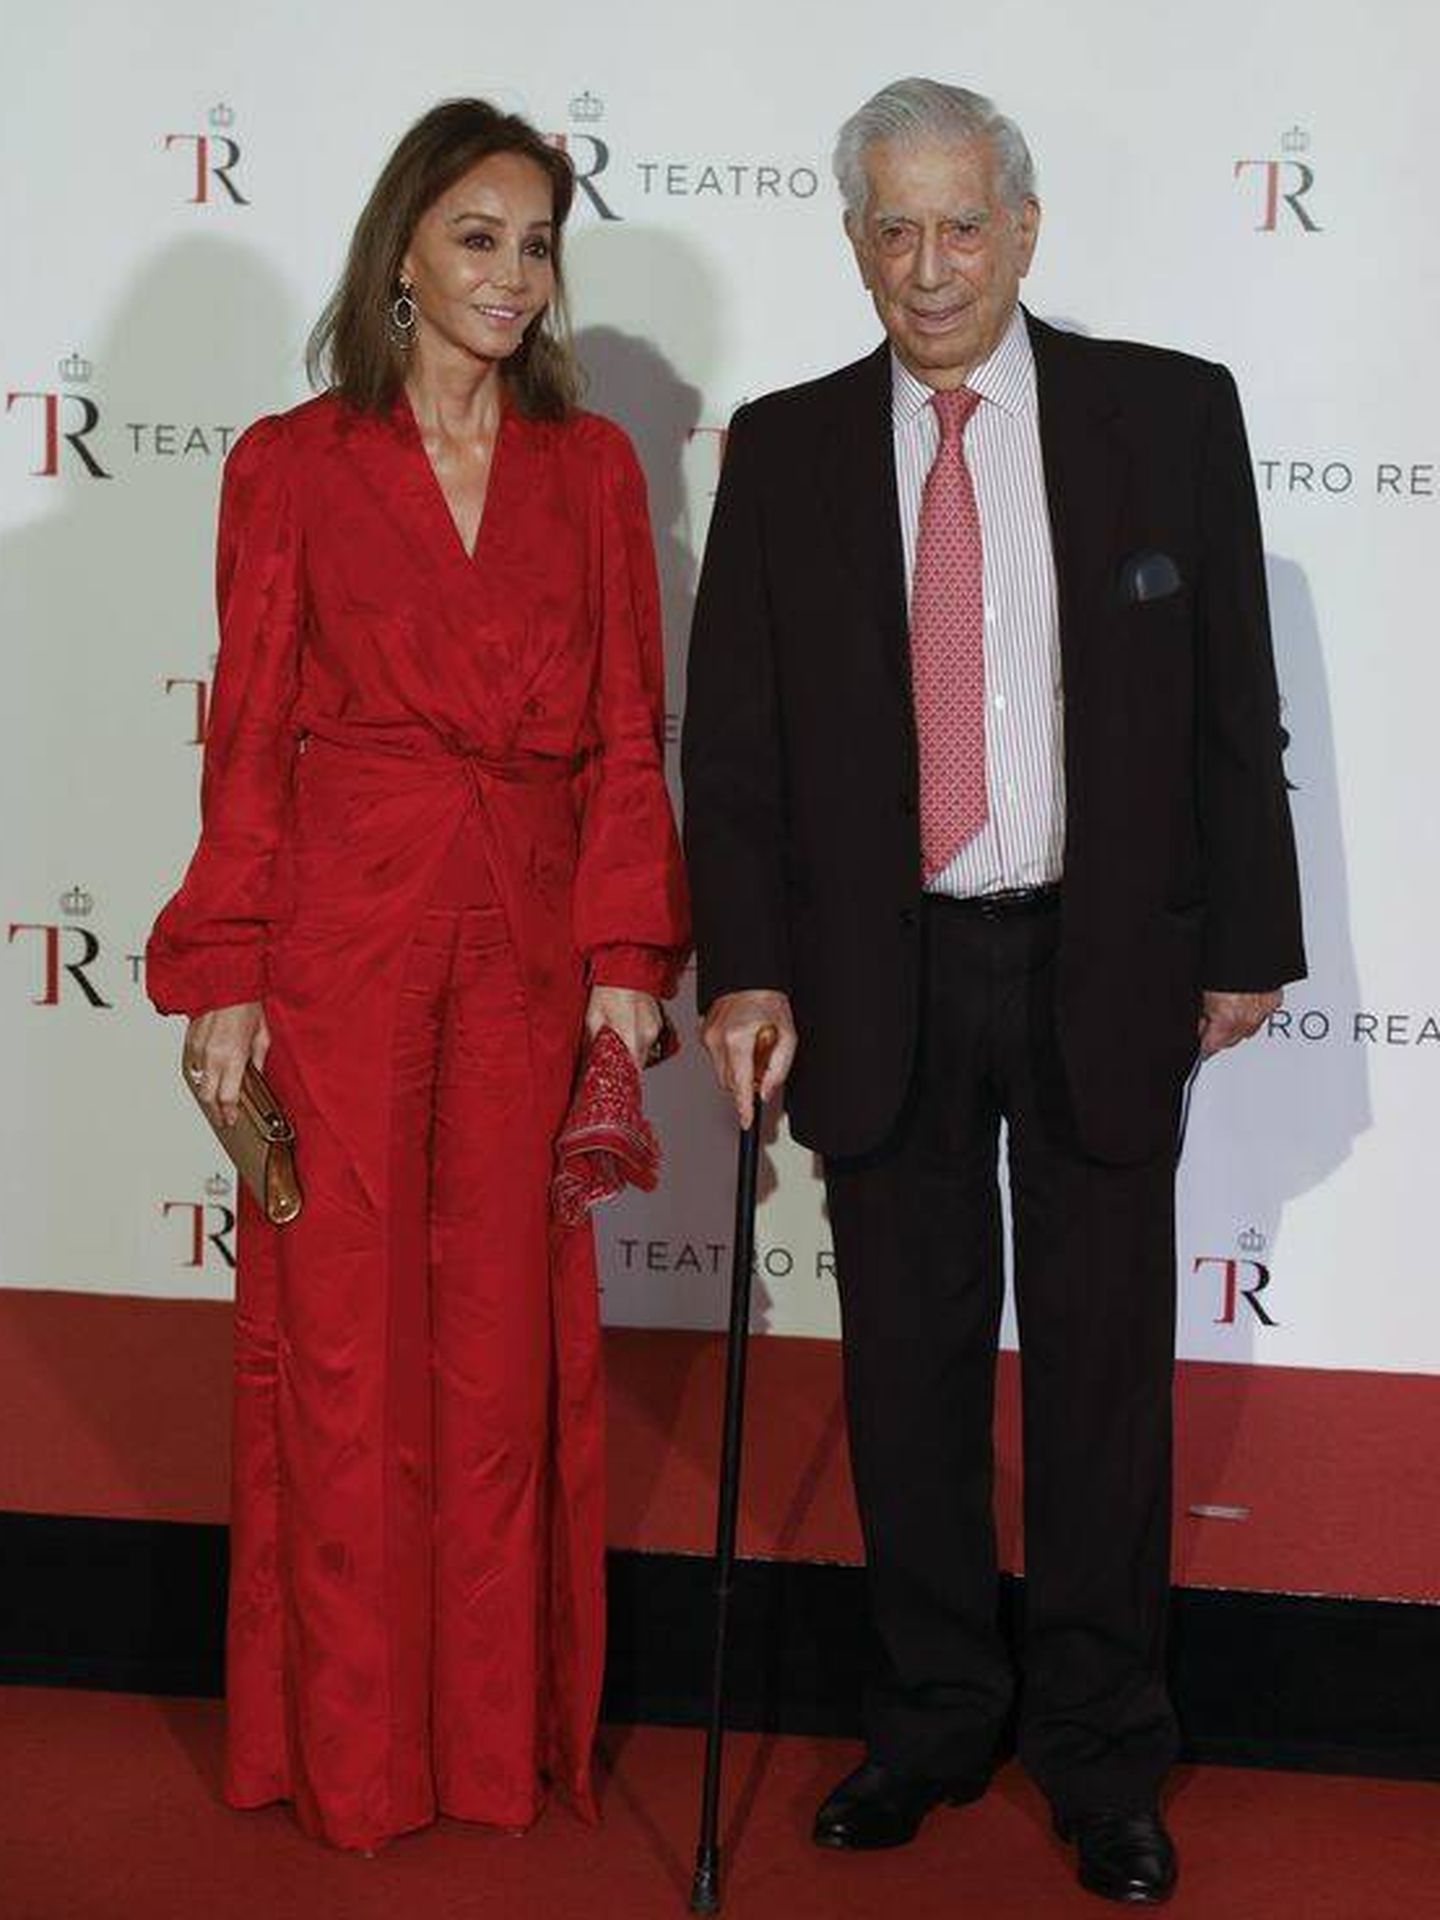  Isabel Preysler y Mario Vargas Llosa, en el Teatro Real. (EFE)